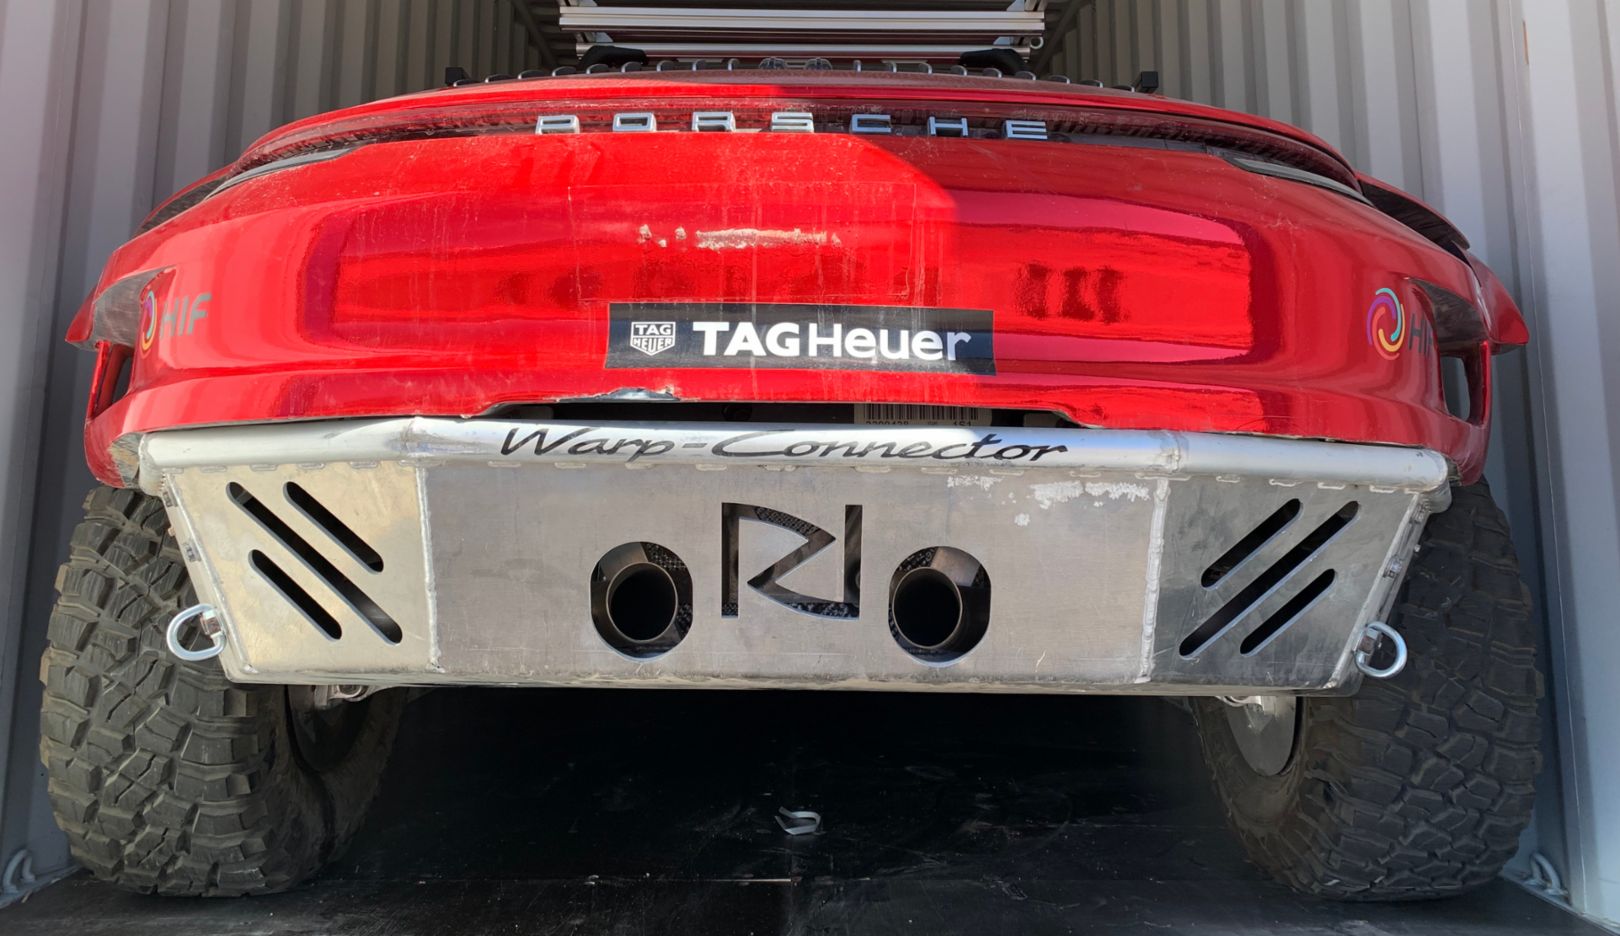 Vista traseira imponente: A inscrição Warp Connector indica o sistema de mesmo nome. Ele foi originalmente projetado para uso no Porsche 919 Hybrid (LMP1).